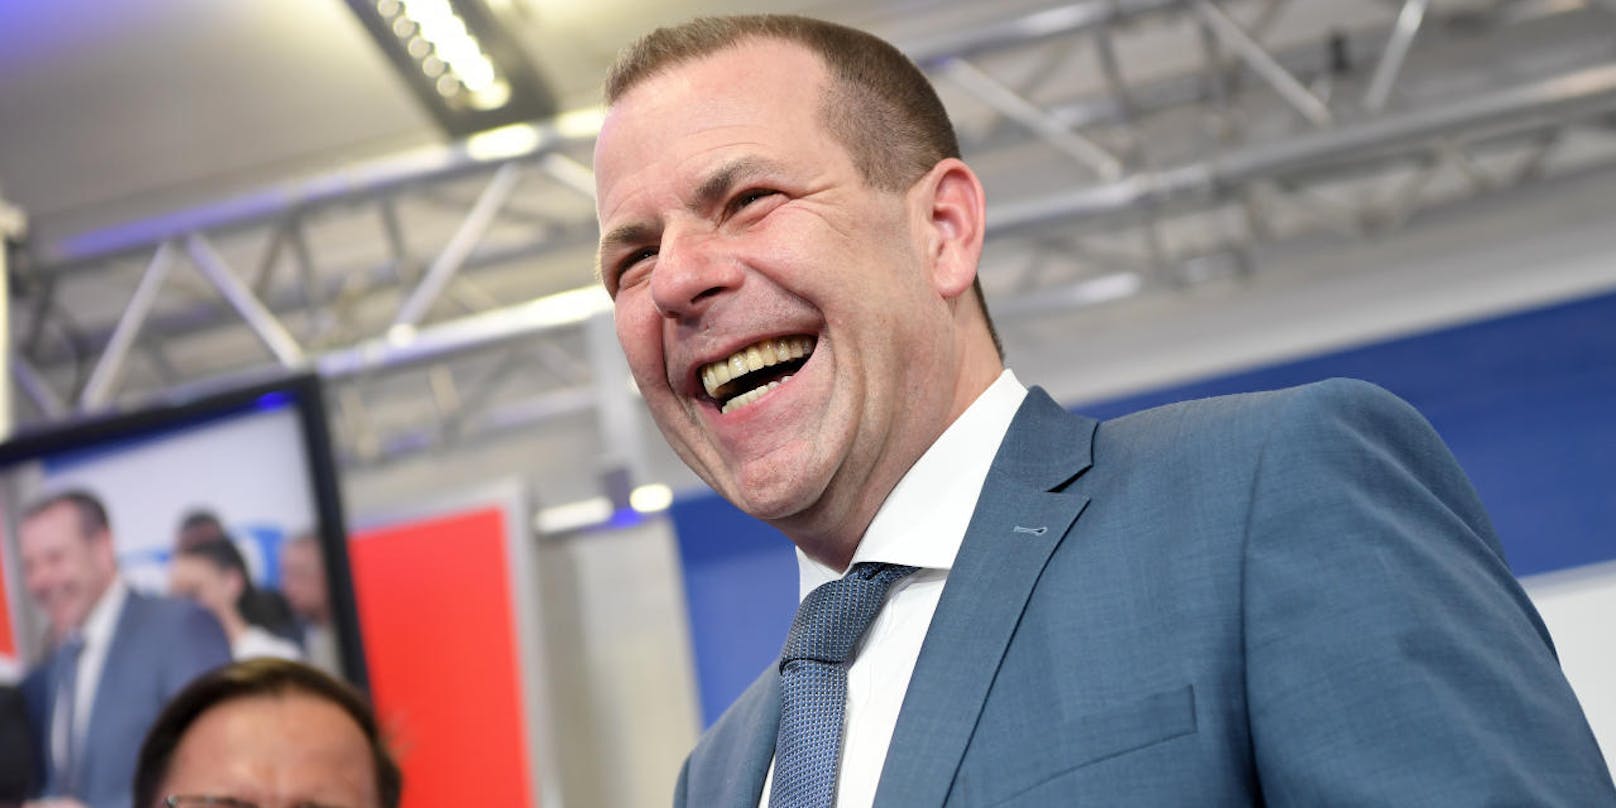 Laut Wahlkampfleiter Harald Vilimsky befinde sich die FPÖ aktuell im Match um Platz drei mit den Grünen und visiere das Match um Platz zwei an.